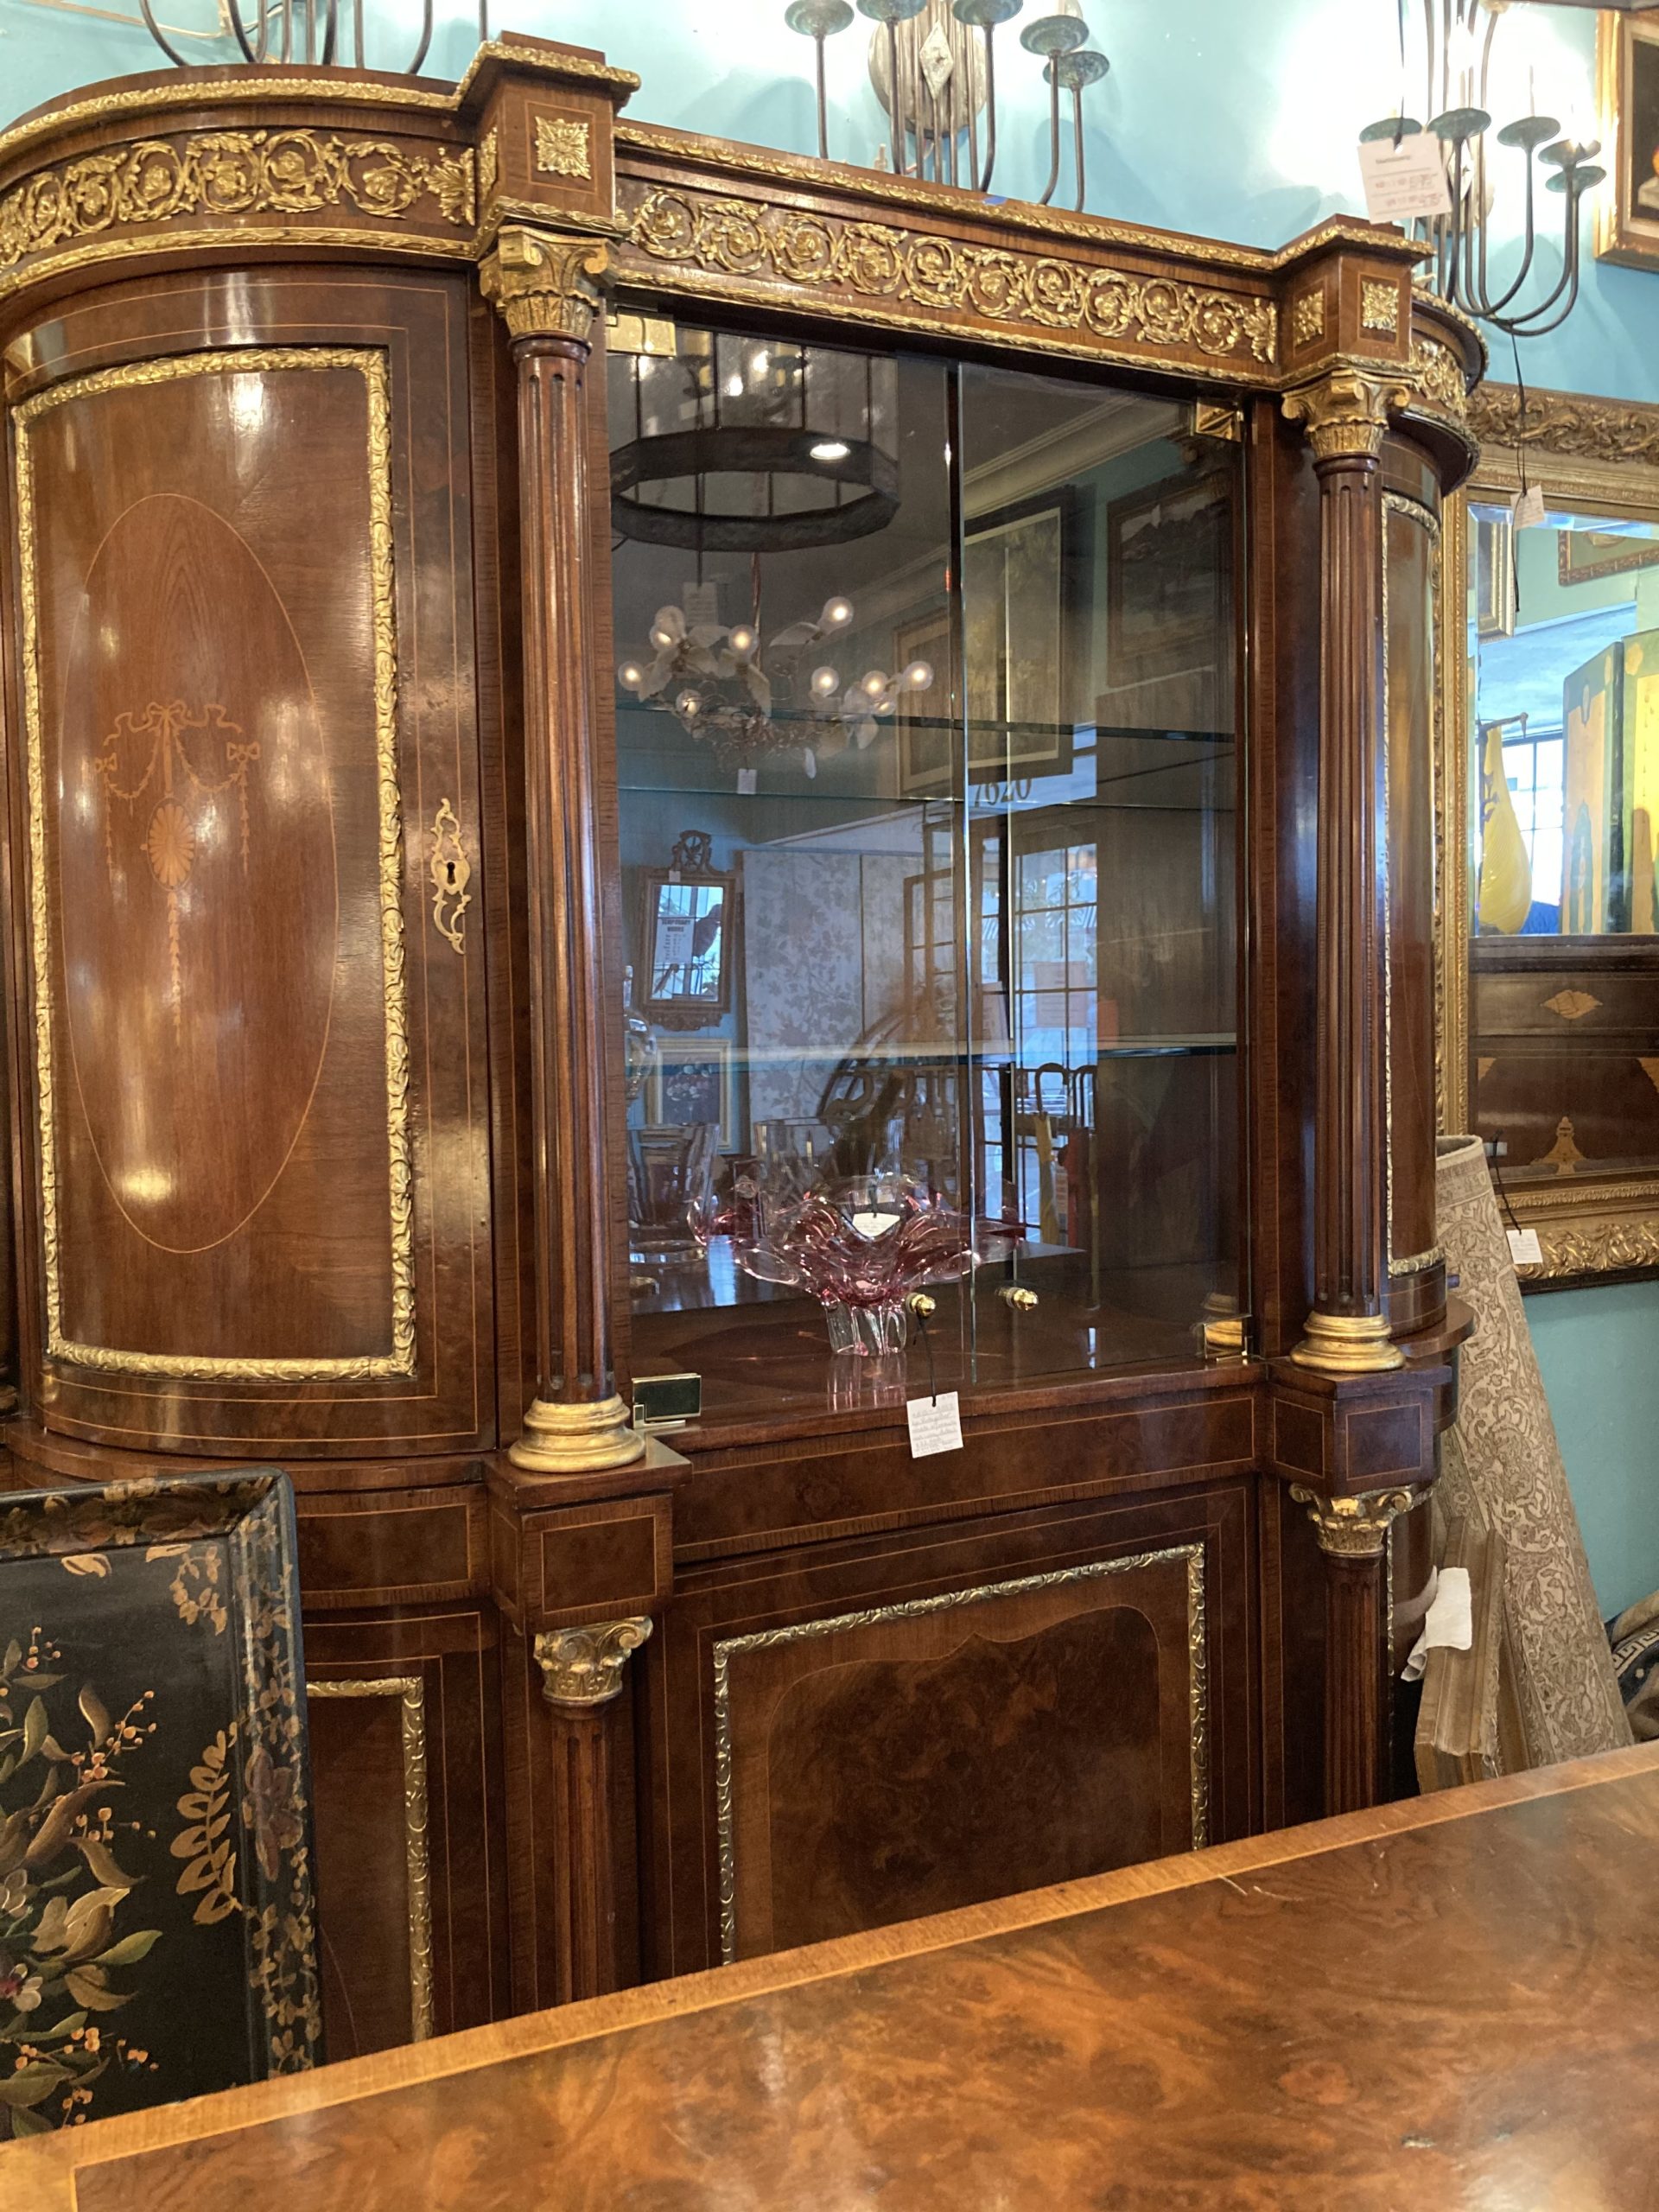 Biedermeier Display Cabinet